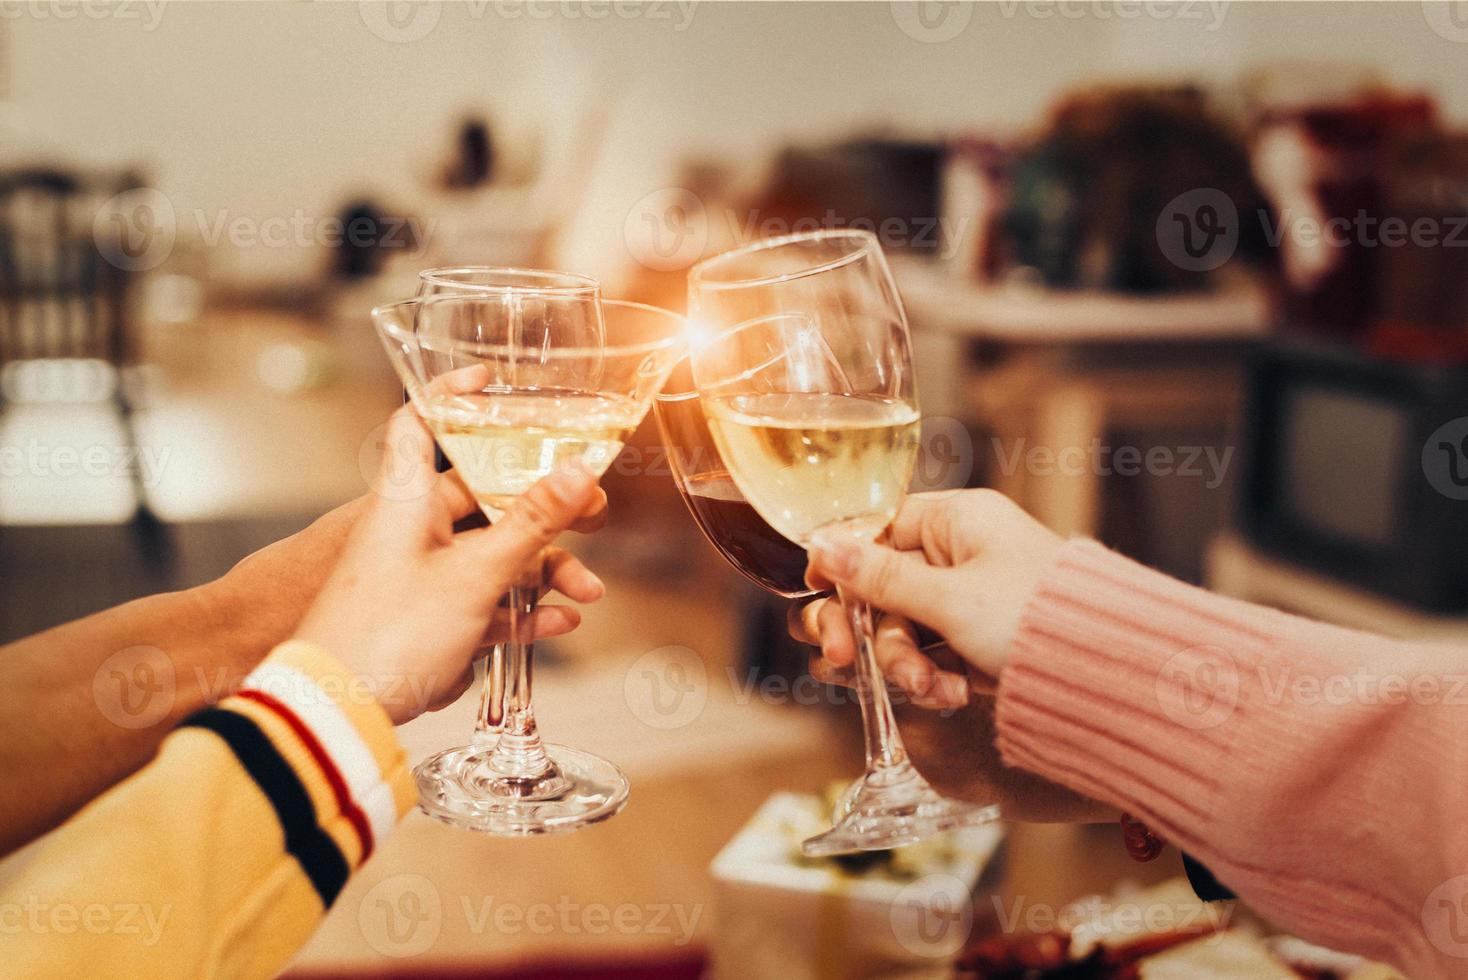 handen van mensen die nieuwjaarsfeest vieren in huis met drinkglas foto